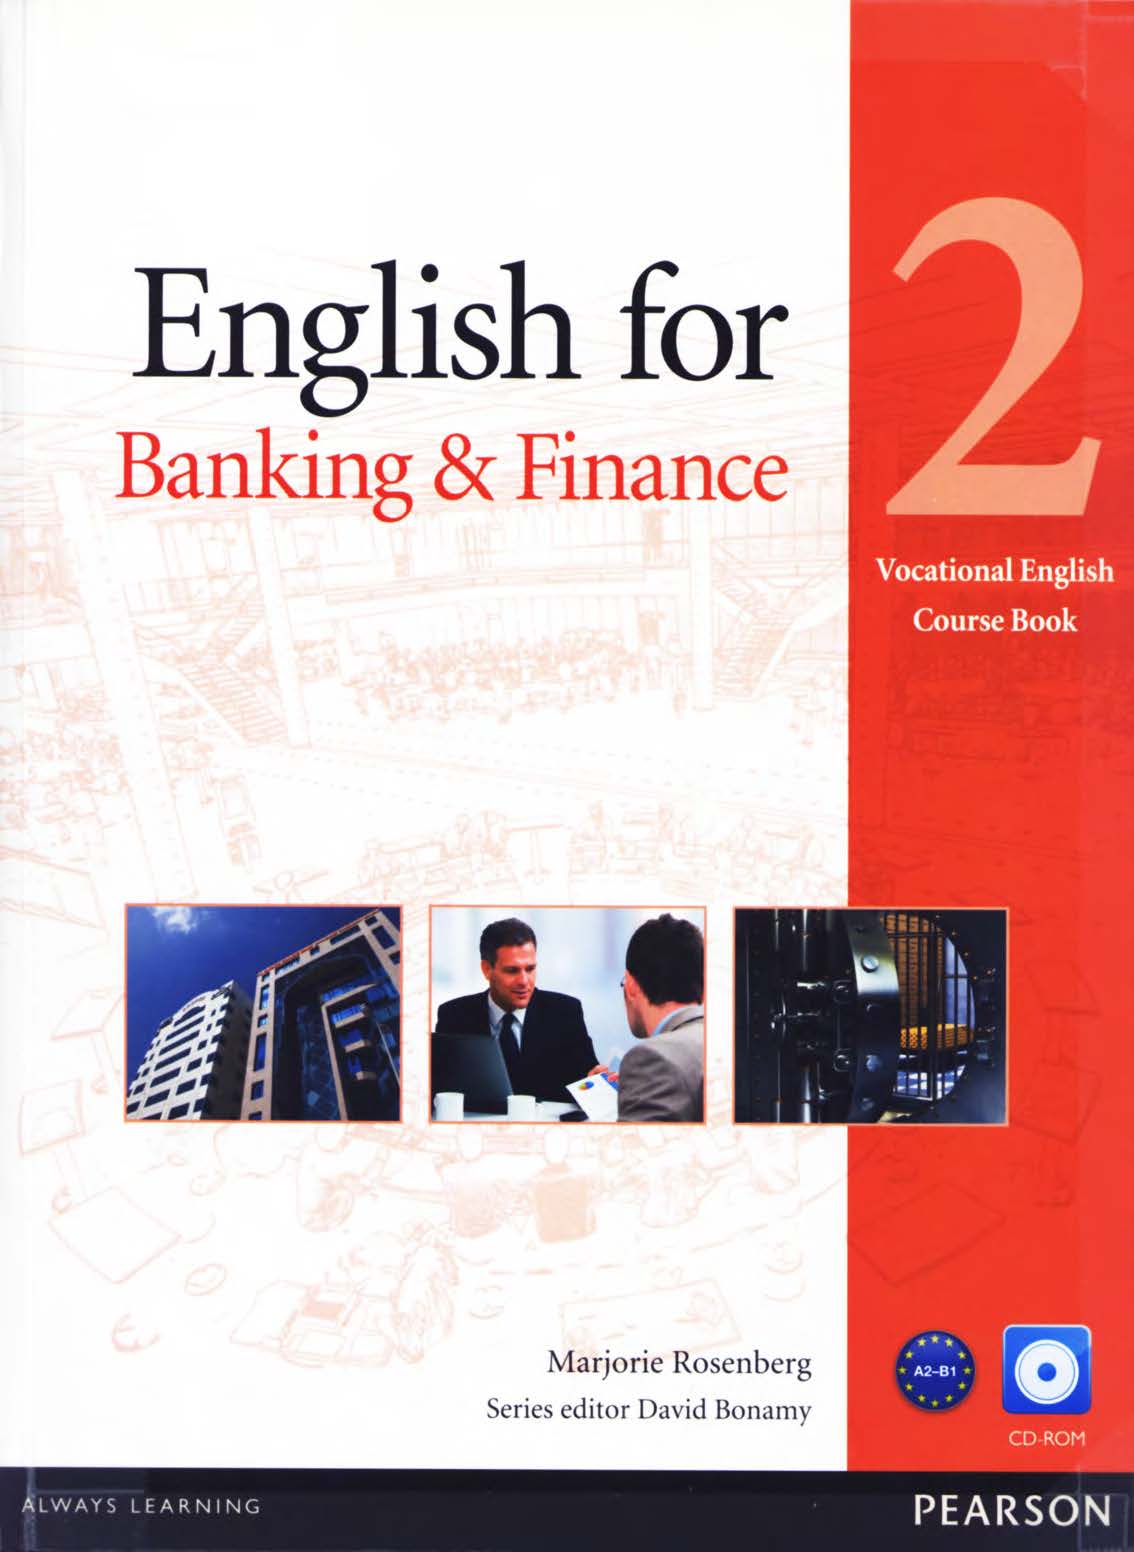 Những nguồn tài liệu tiếng Anh chuyên ngành Tài chính ngân hàng chất lượng cho các bạn sinh viên 35